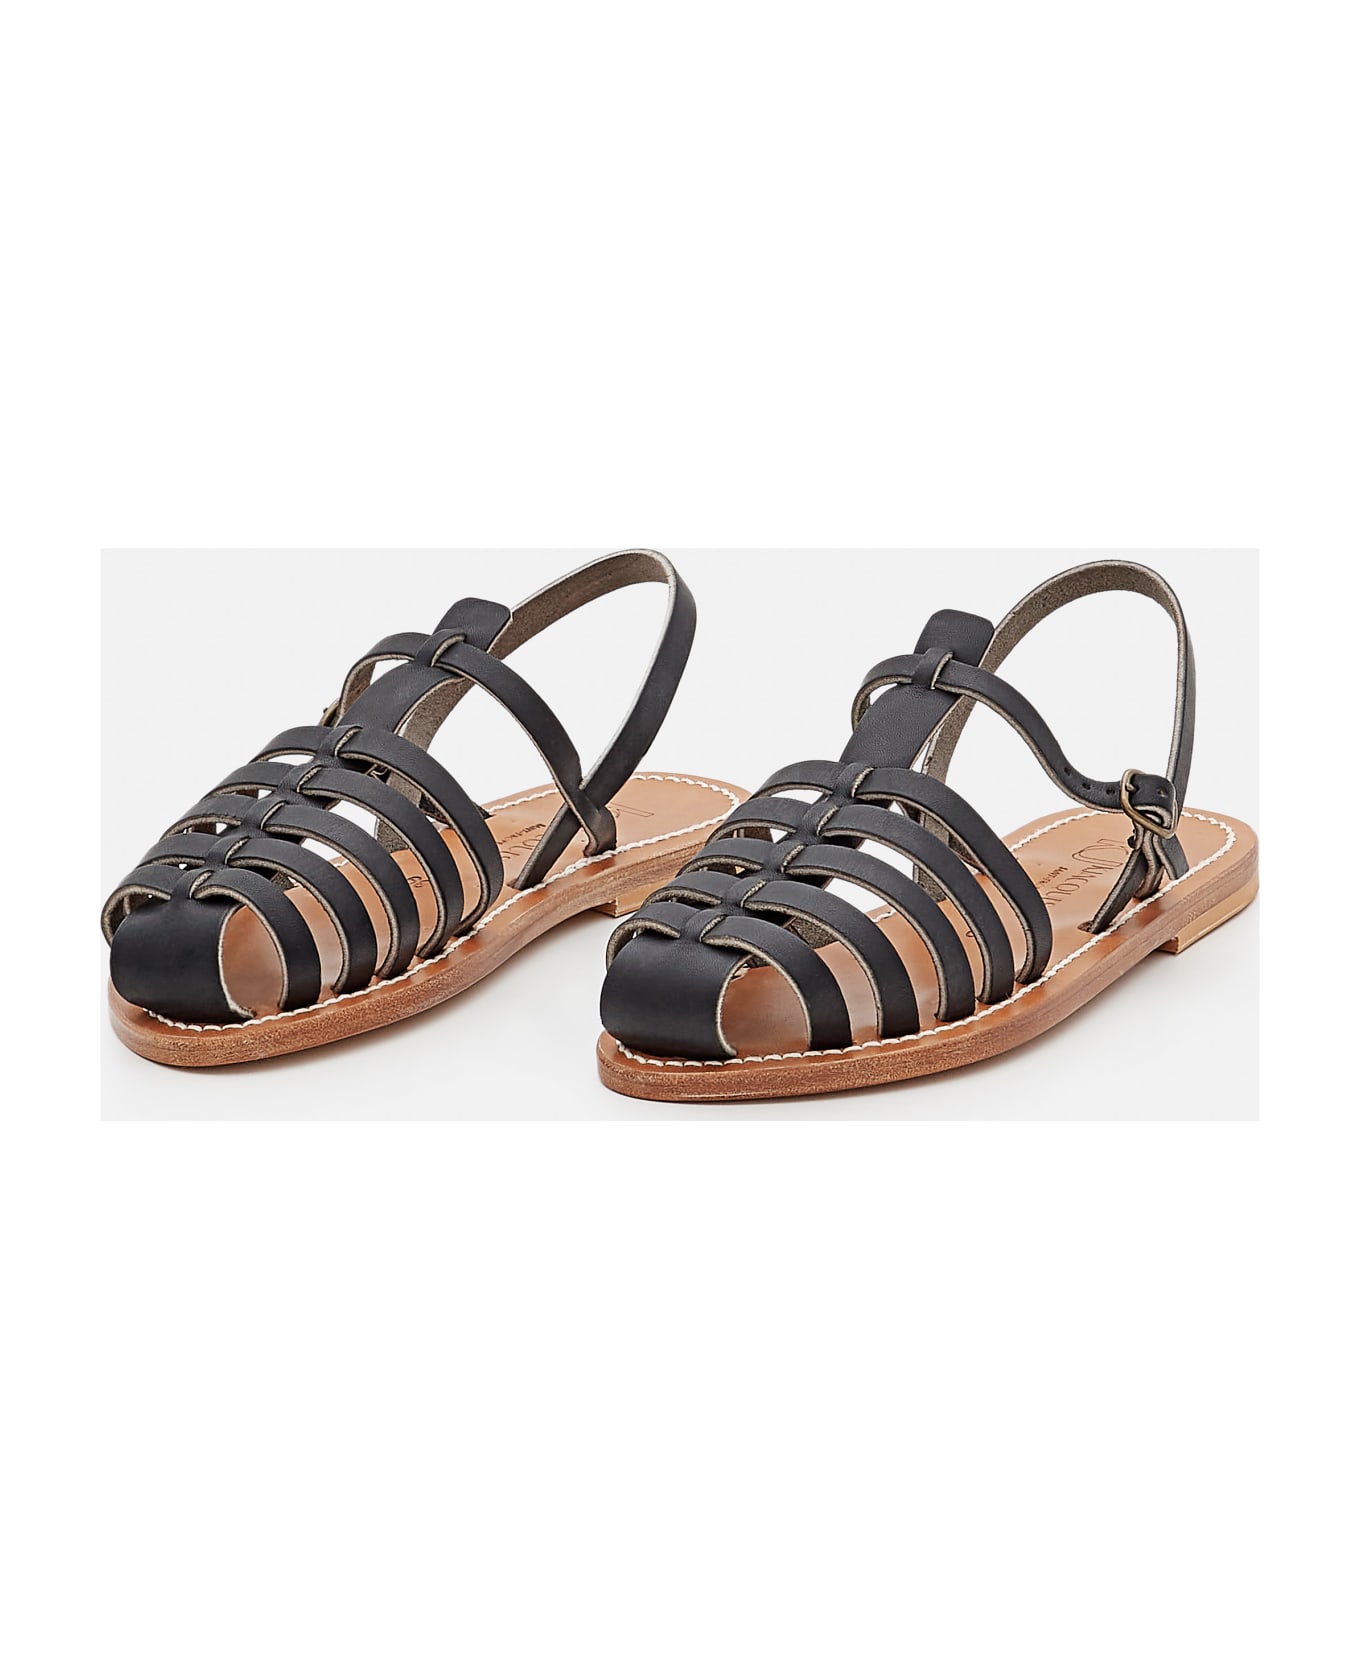 K.Jacques Adrien Leather Sandals - Black